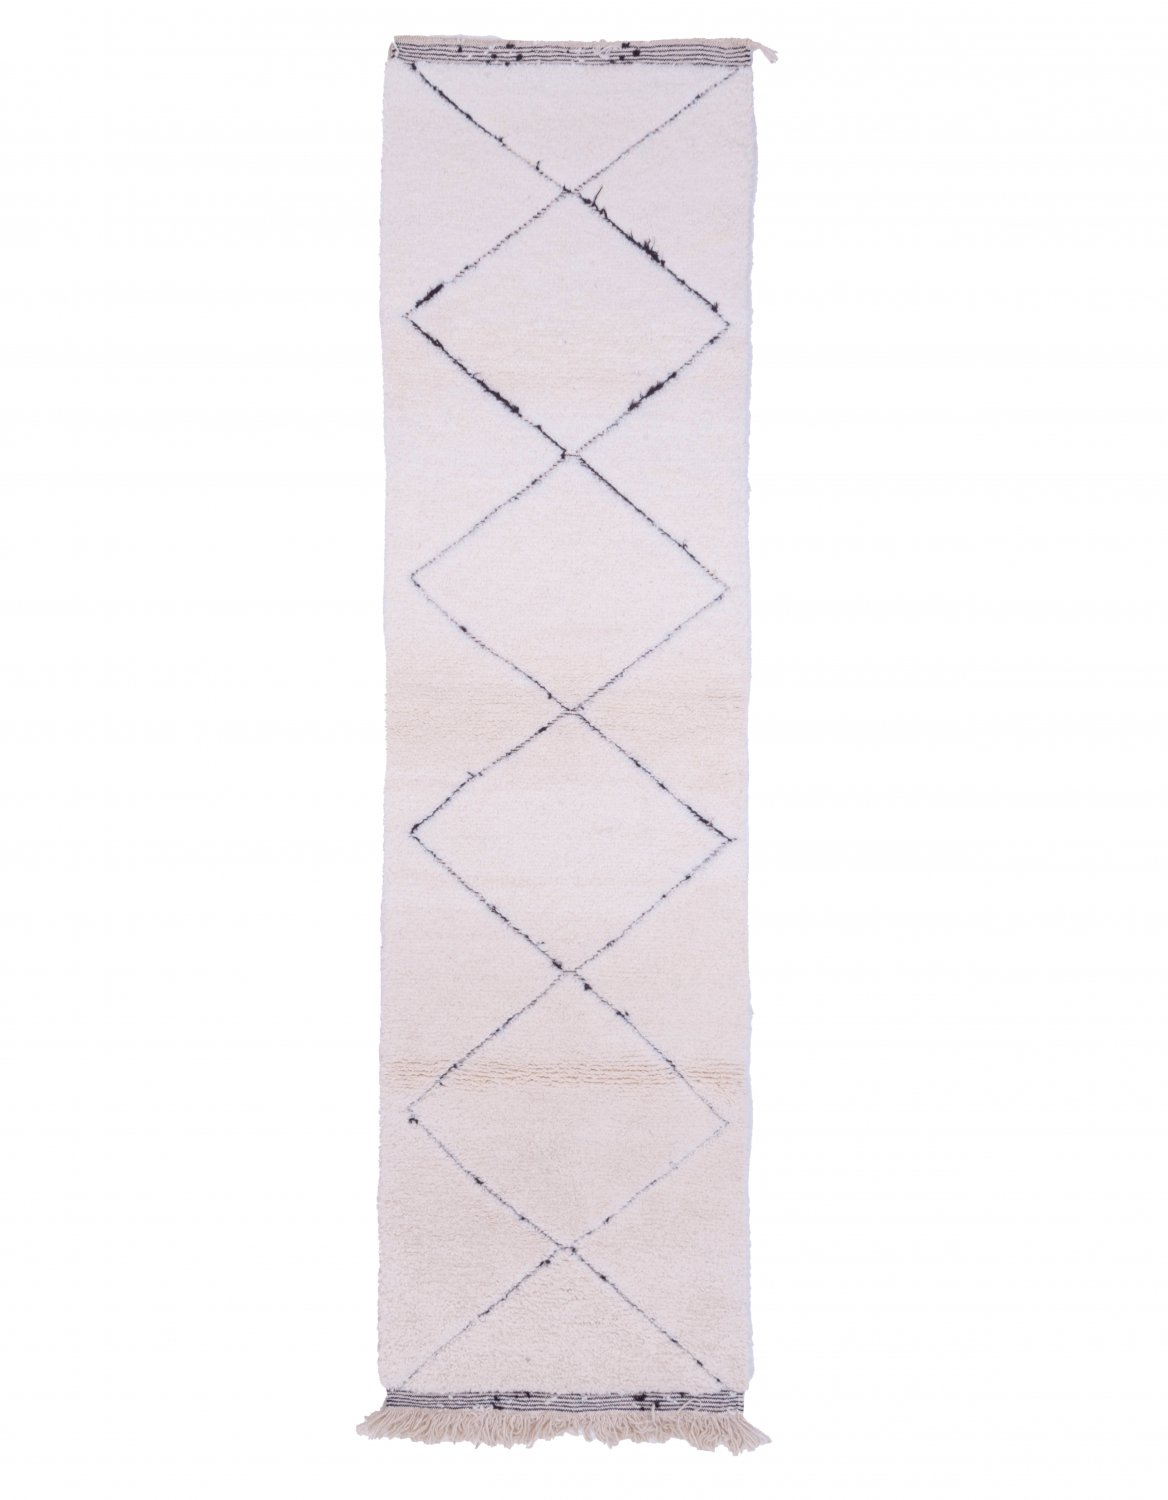 Marokkolainen Kilim matto Beni Ouarain 290 x 85 cm